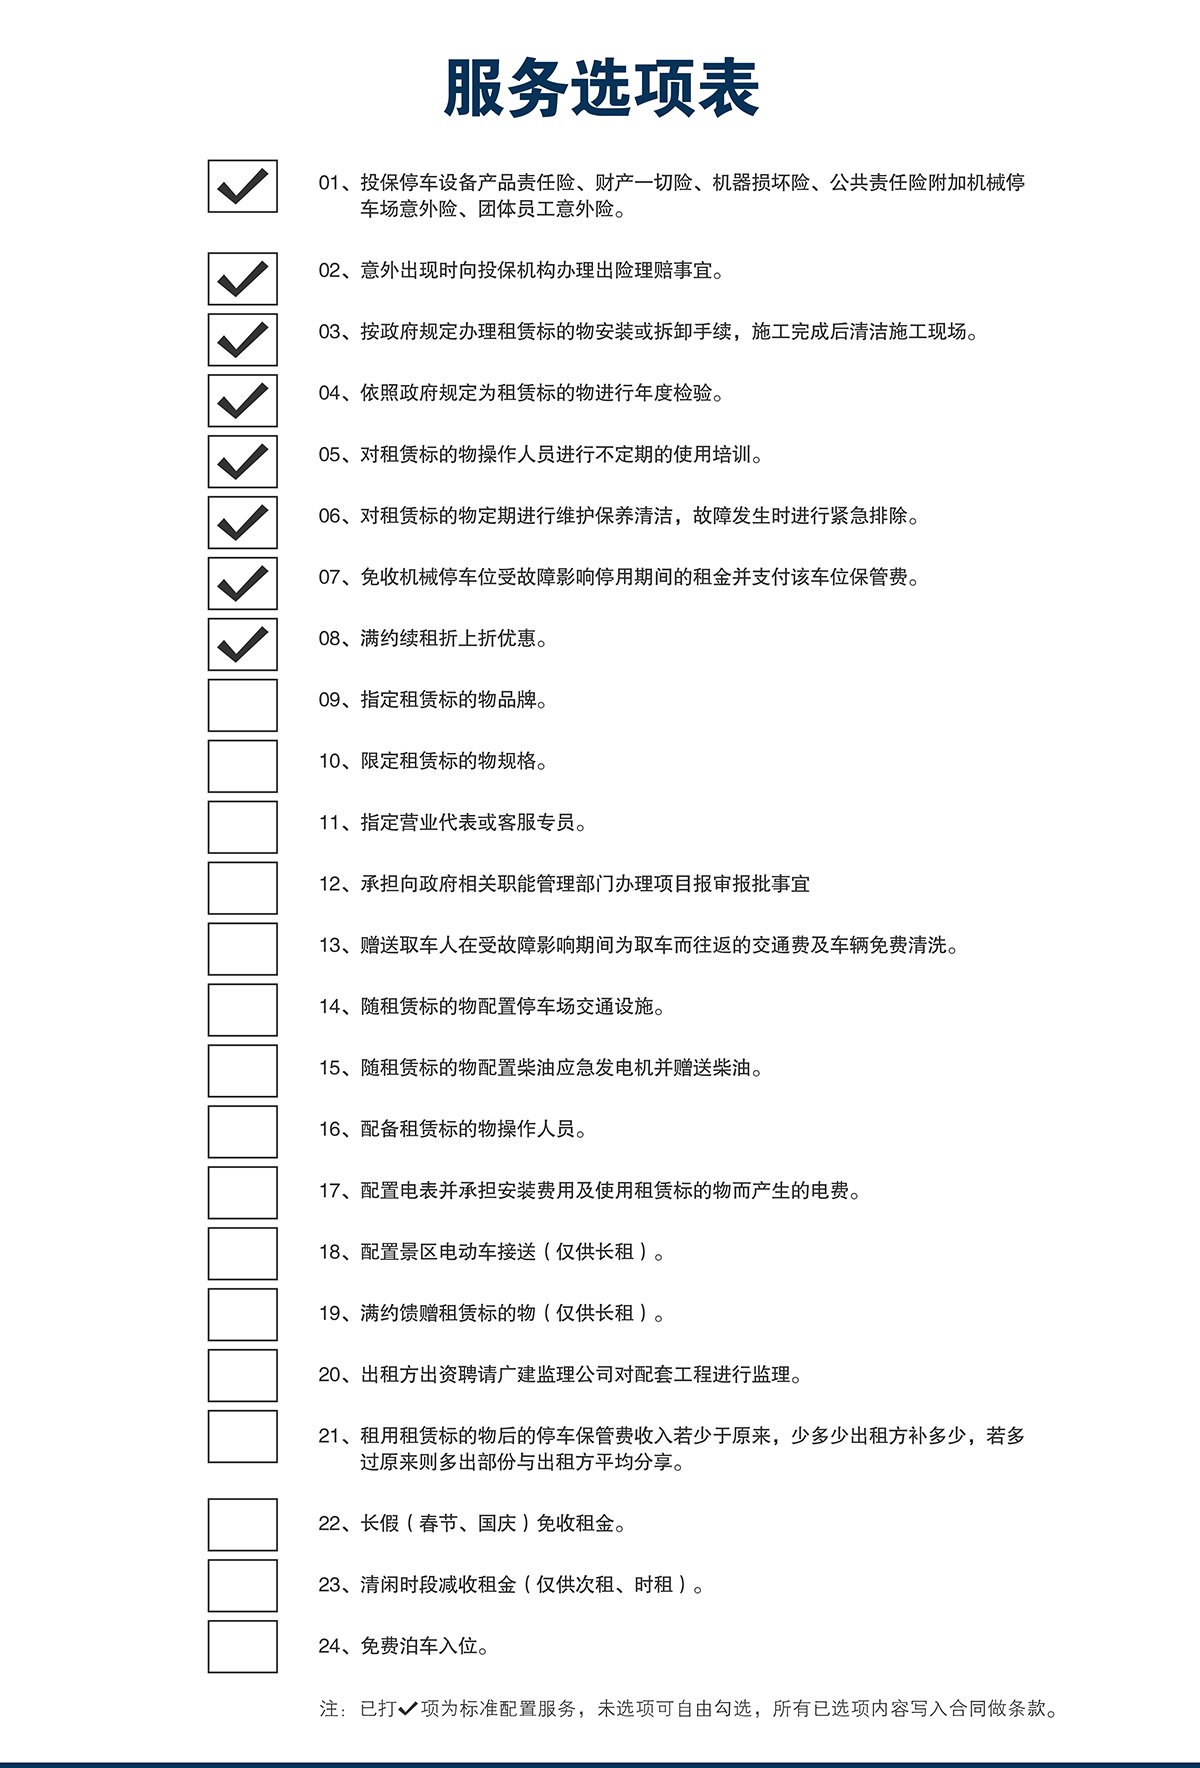 成都莱贝停车设备投资建设运营管理服务选项表.jpg